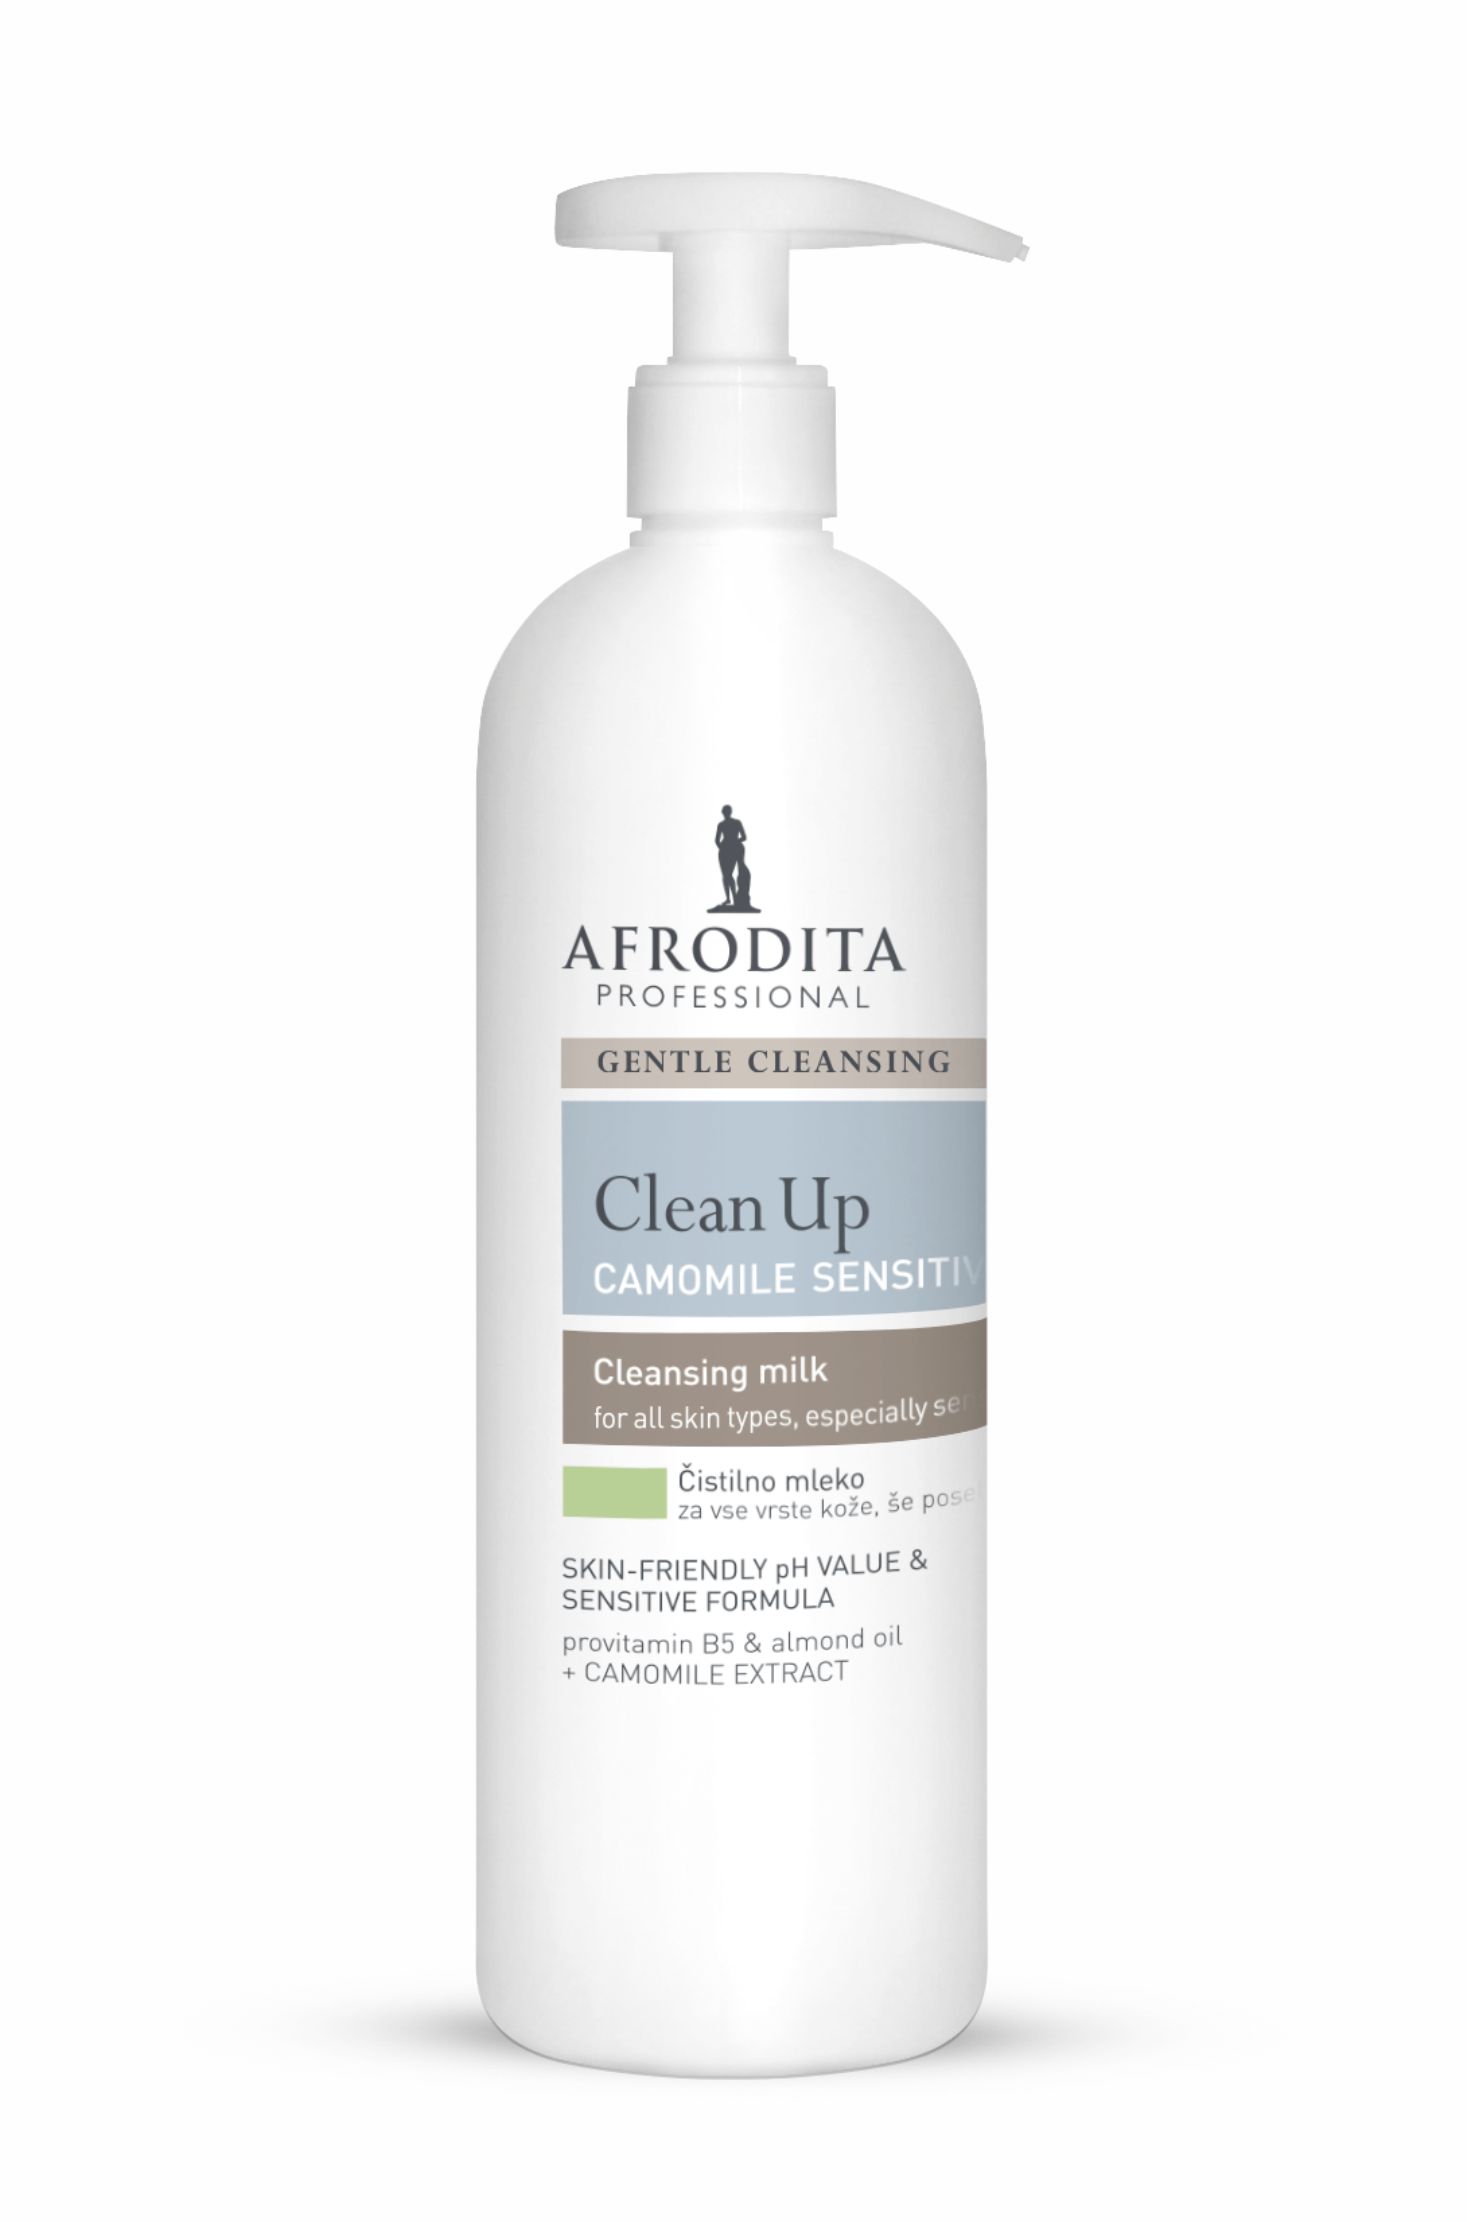 Kozmetika Afrodita - Clean Up - Mleczko Camomile Sensitive do demakijażu dla skóry wrażliwej 500 ml